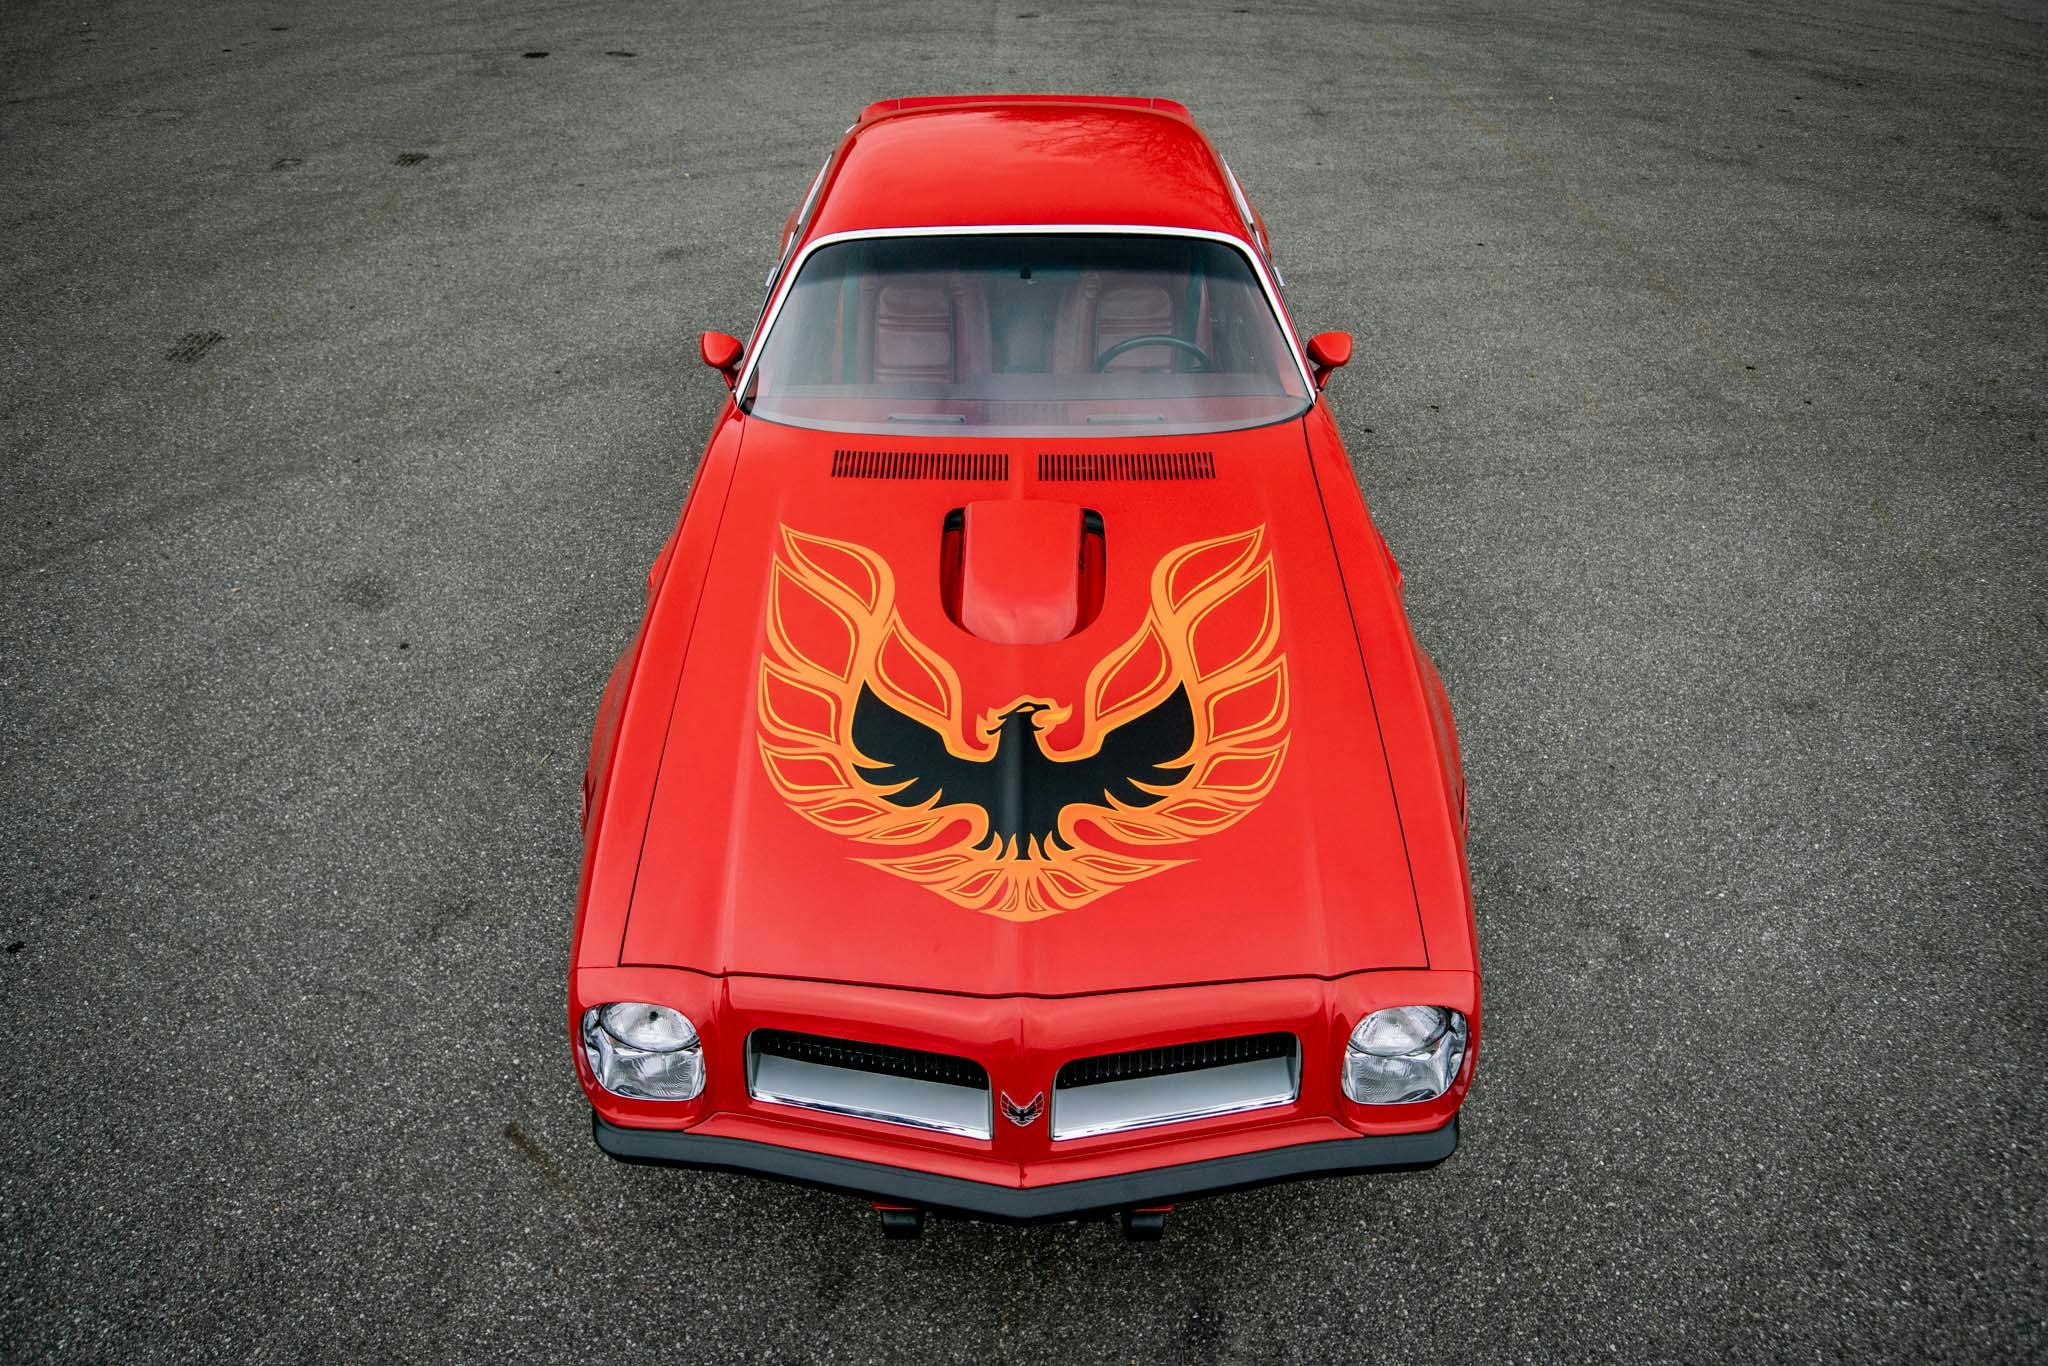 1974 Pontiac Firebird Trans Am Super Duty 455 high angle front